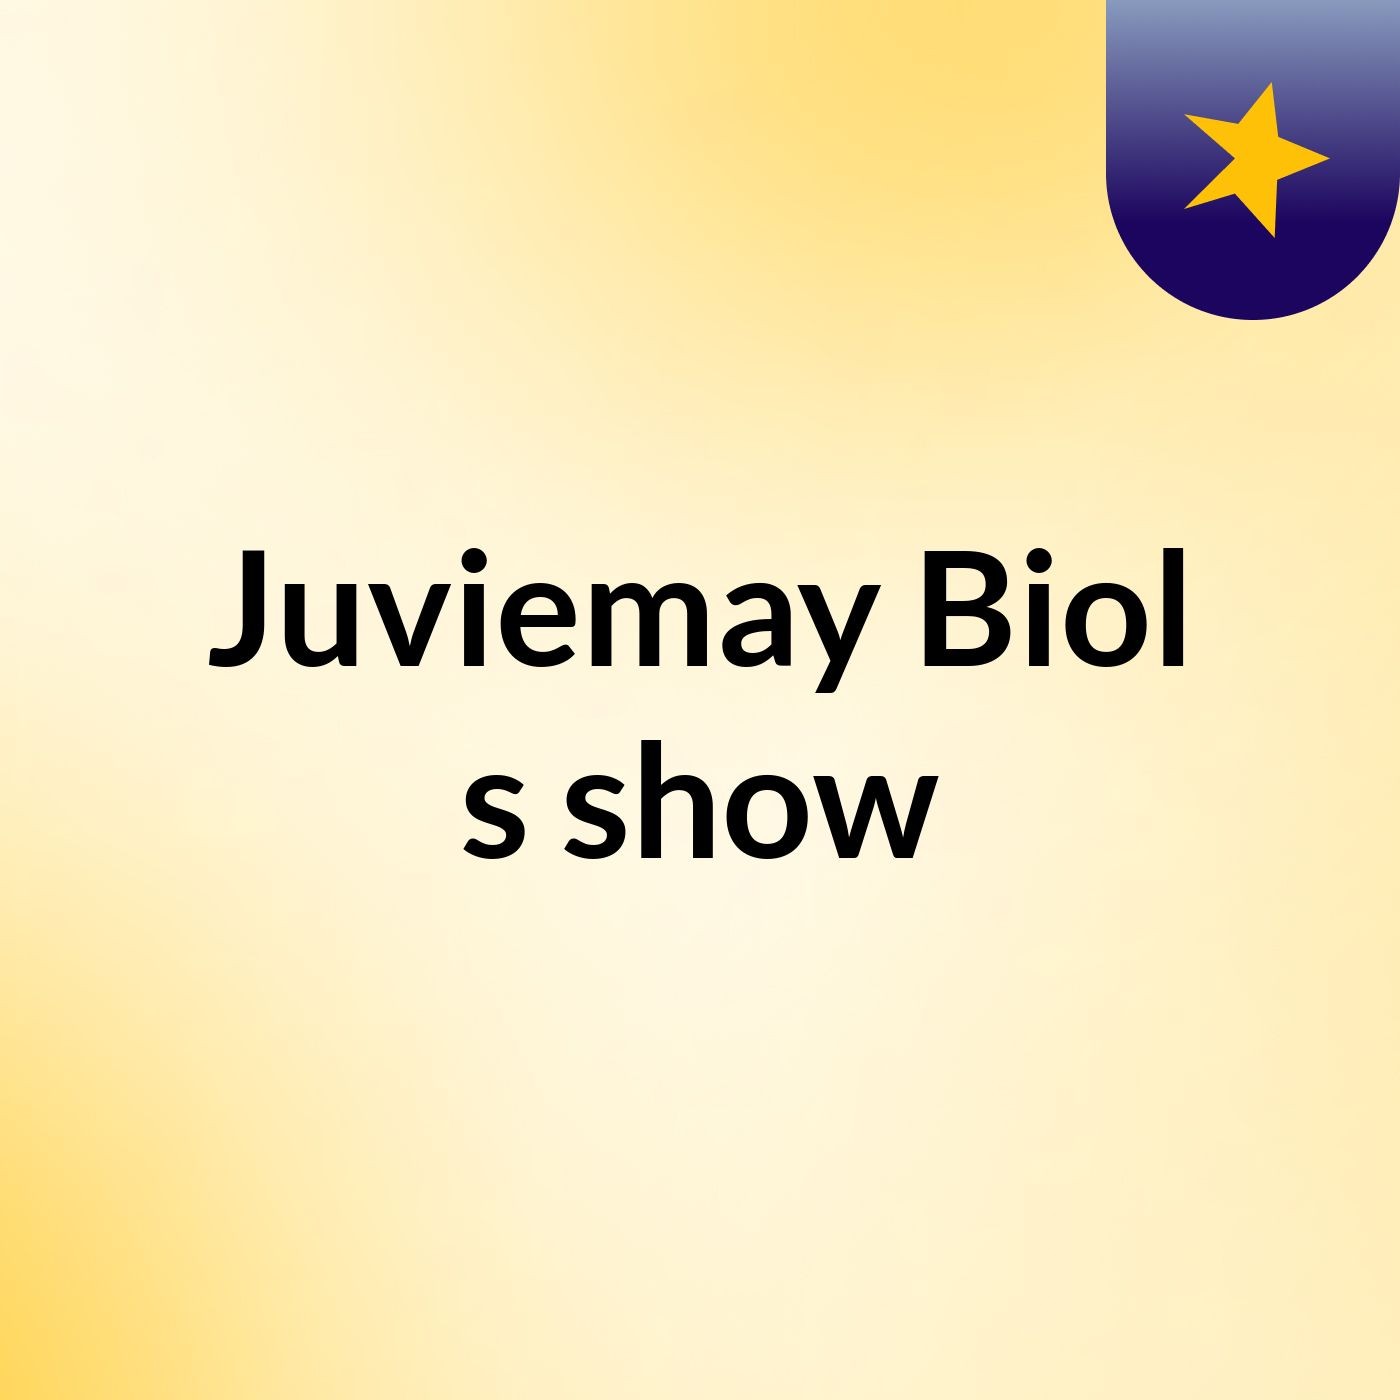 Episode 3 - Juviemay Biol's show